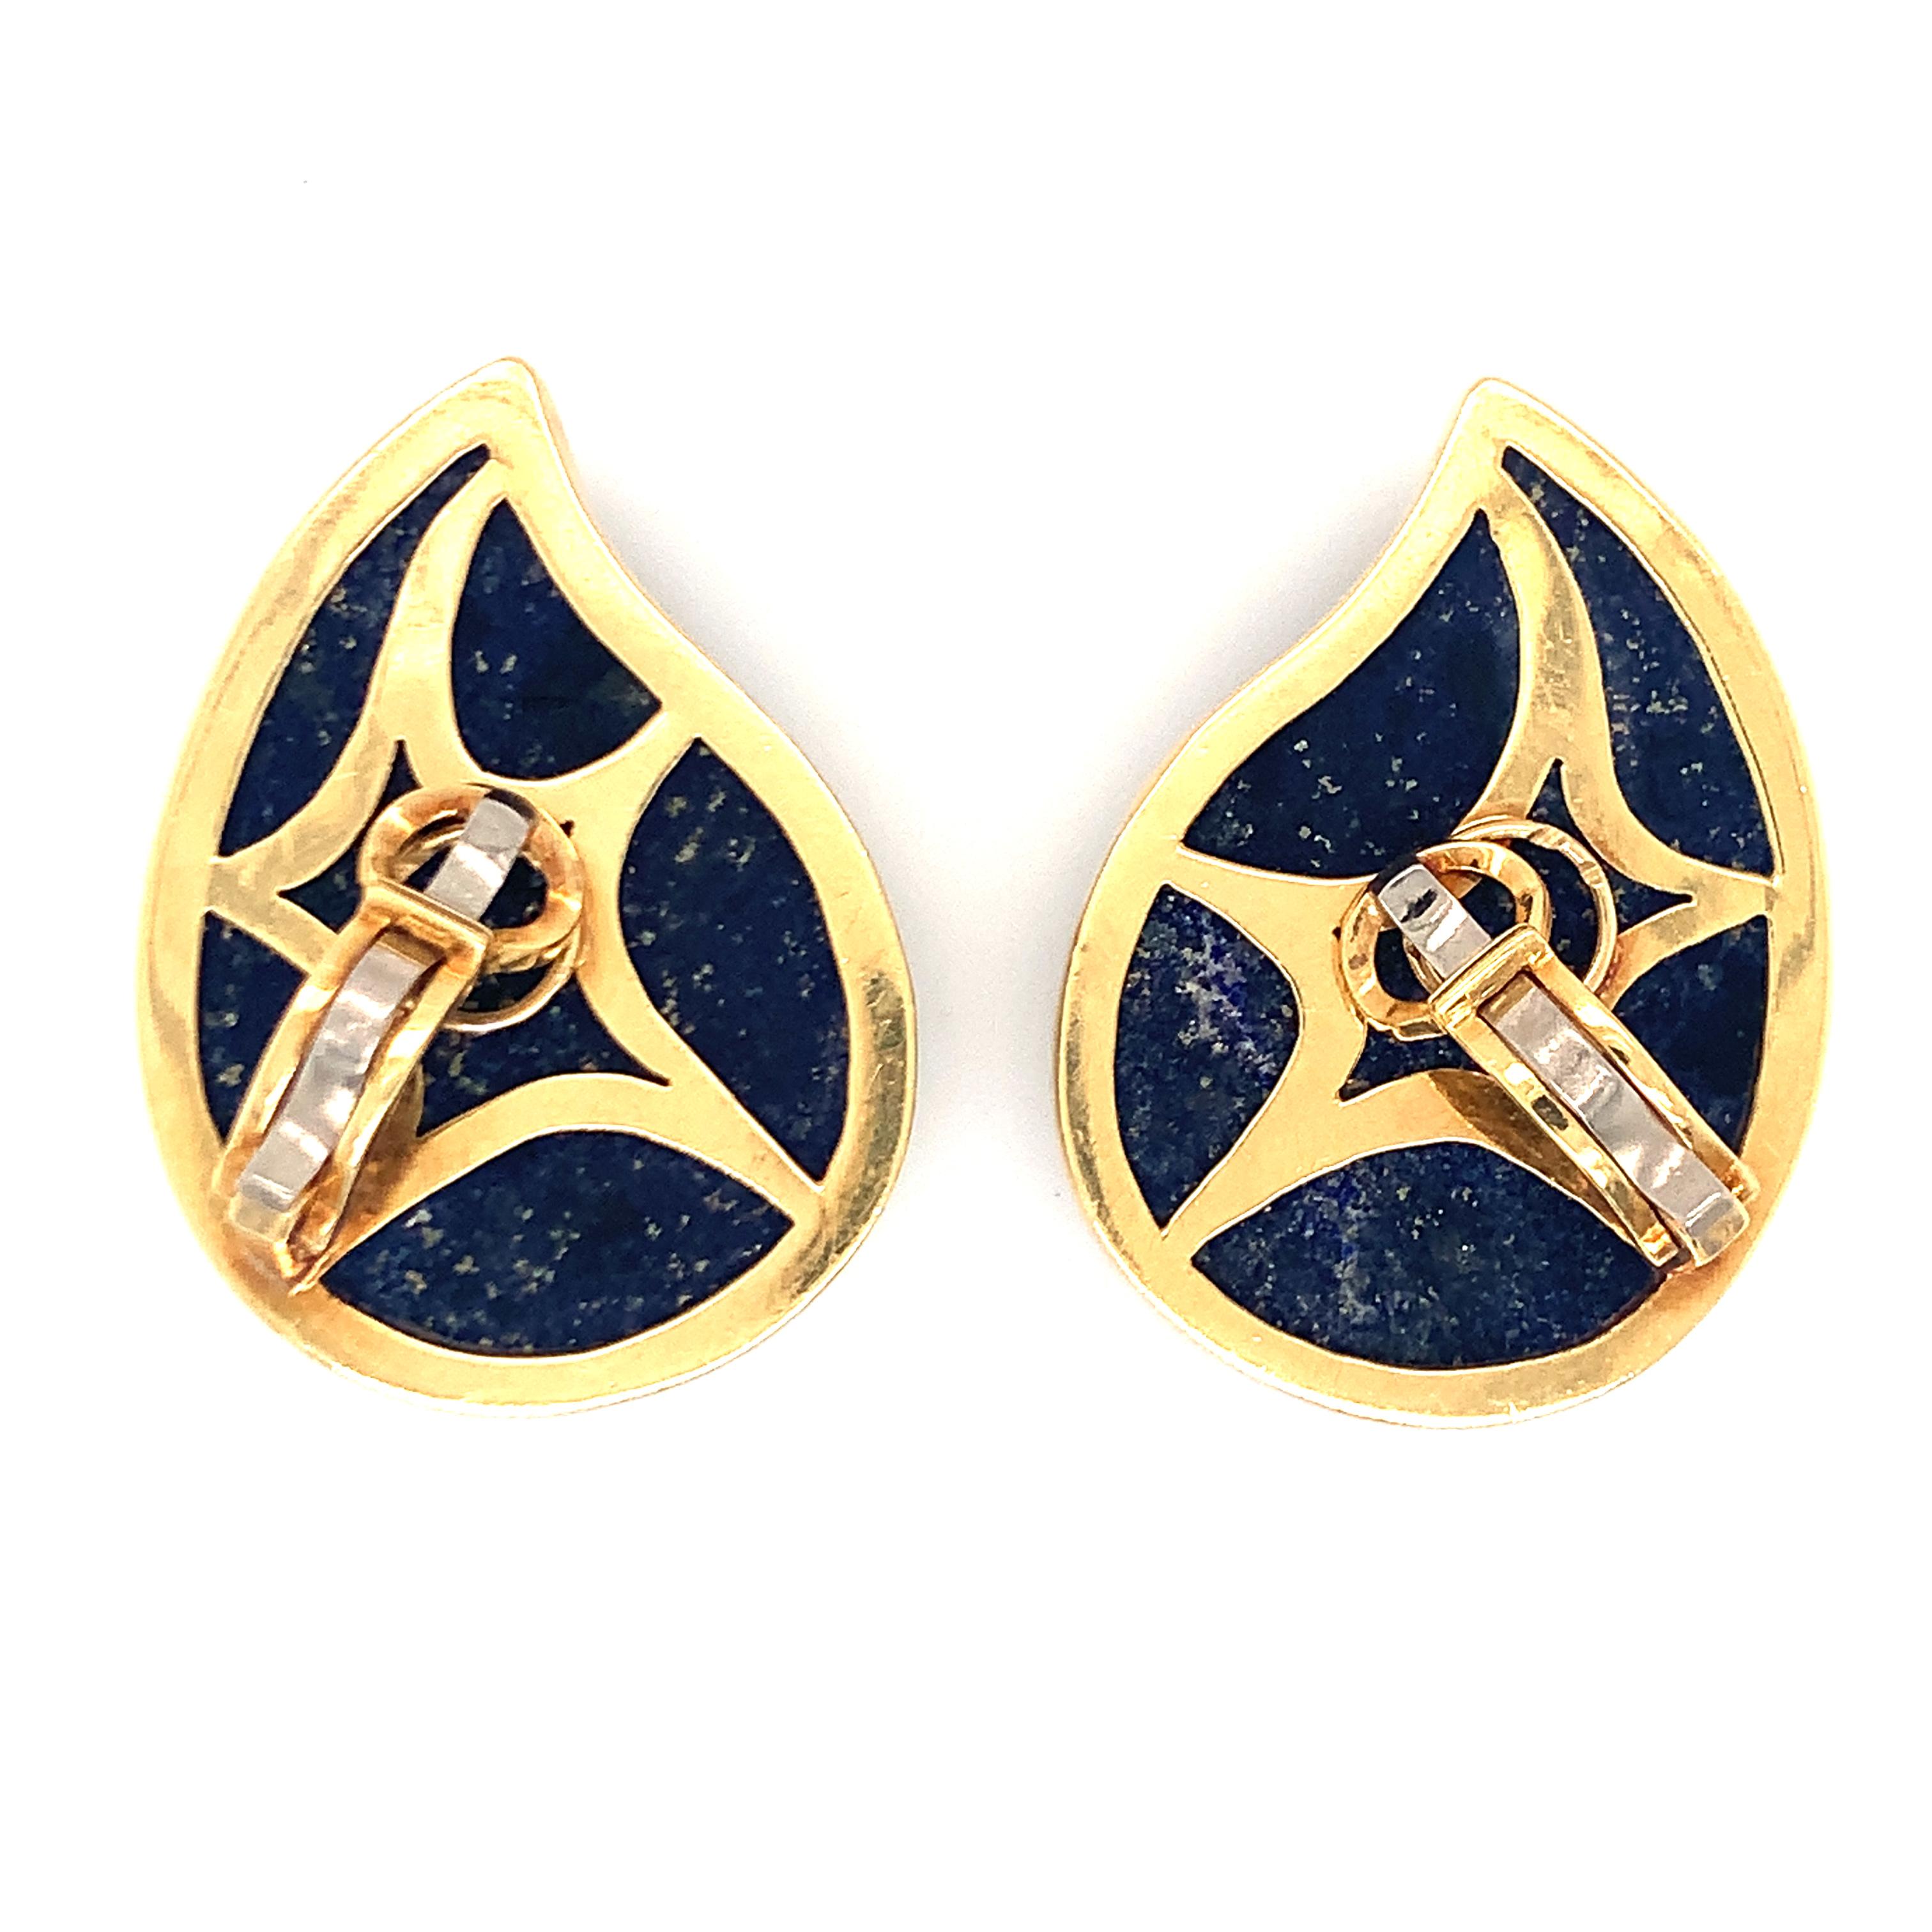 Ein Paar Ohrringe aus Lapislazuli und Diamanten aus 18 Karat Gelbgold mit zwei tropfenförmigen Lapis-Steinen, die mit 48 einzelnen Diamanten im Rundschliff von insgesamt 1,50 Karat verziert sind. Ca. 1970er Jahre.

Eindrucksvoll, glänzend,